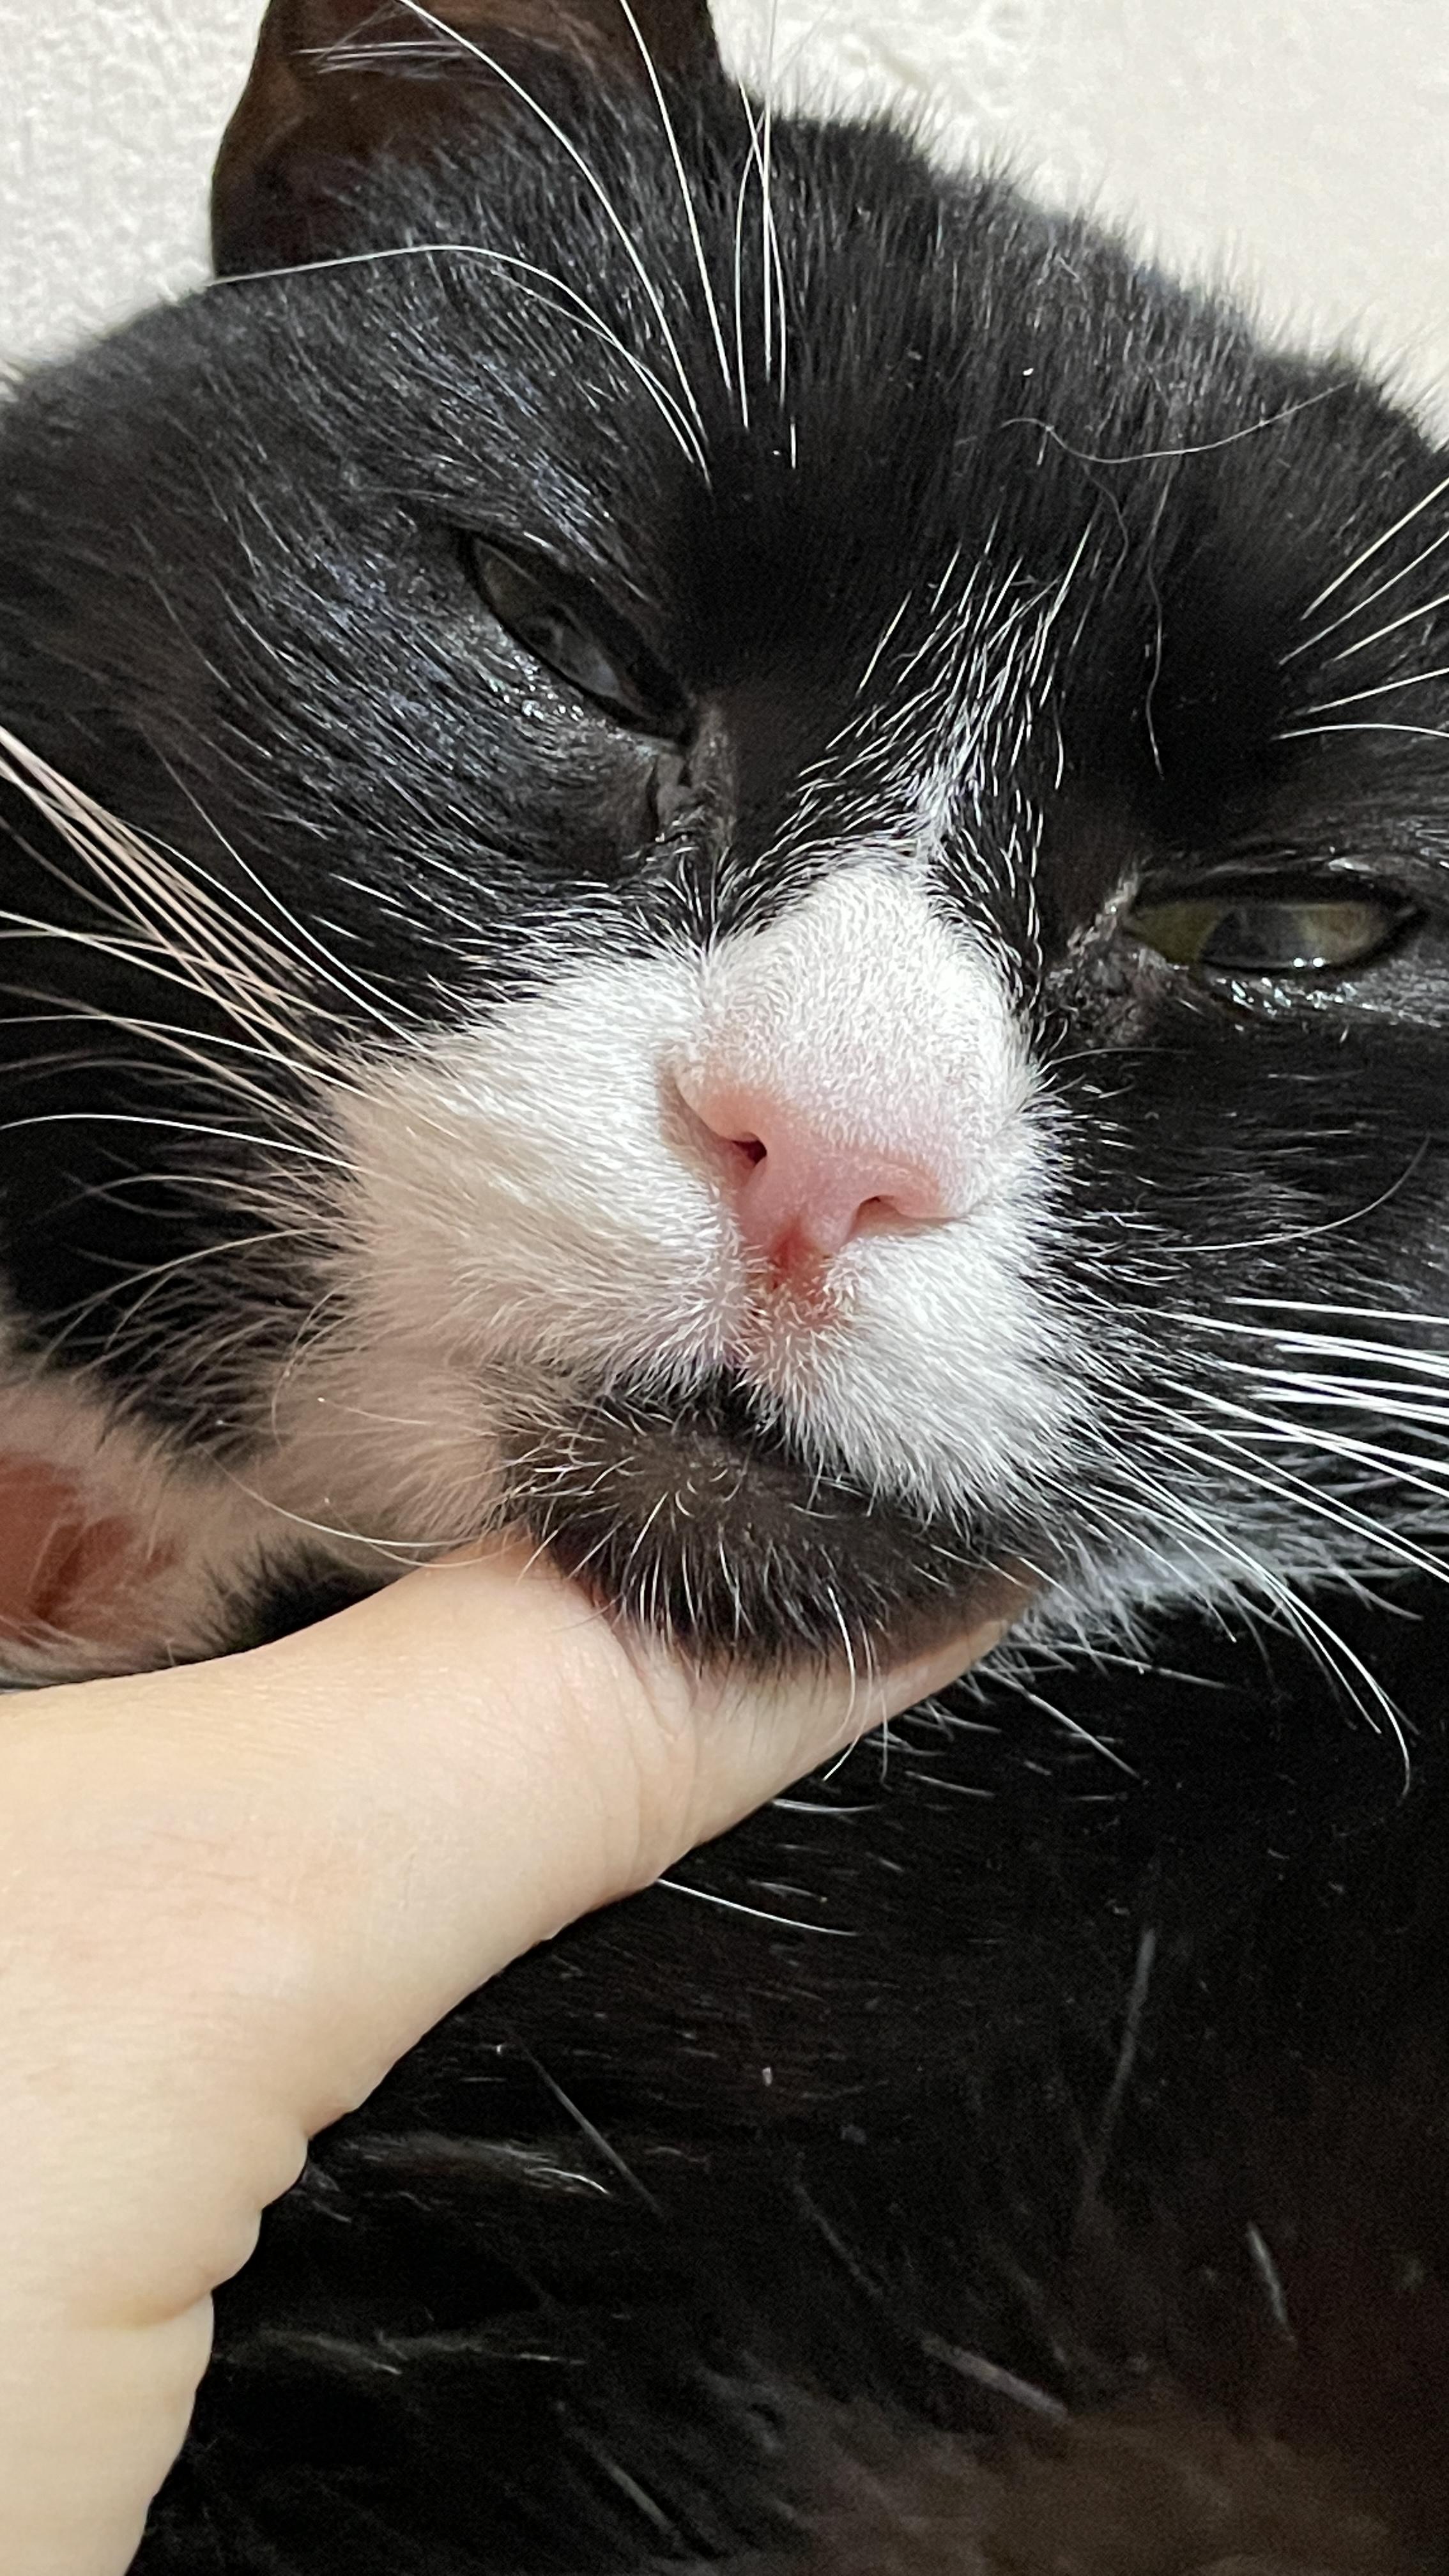 У кошки на носу сегодня появилась болячка, бесплатная консультация  ветеринара - вопрос задан пользователем Наташа Олейникова про питомца: кошка  Без породы (домашняя кошка)